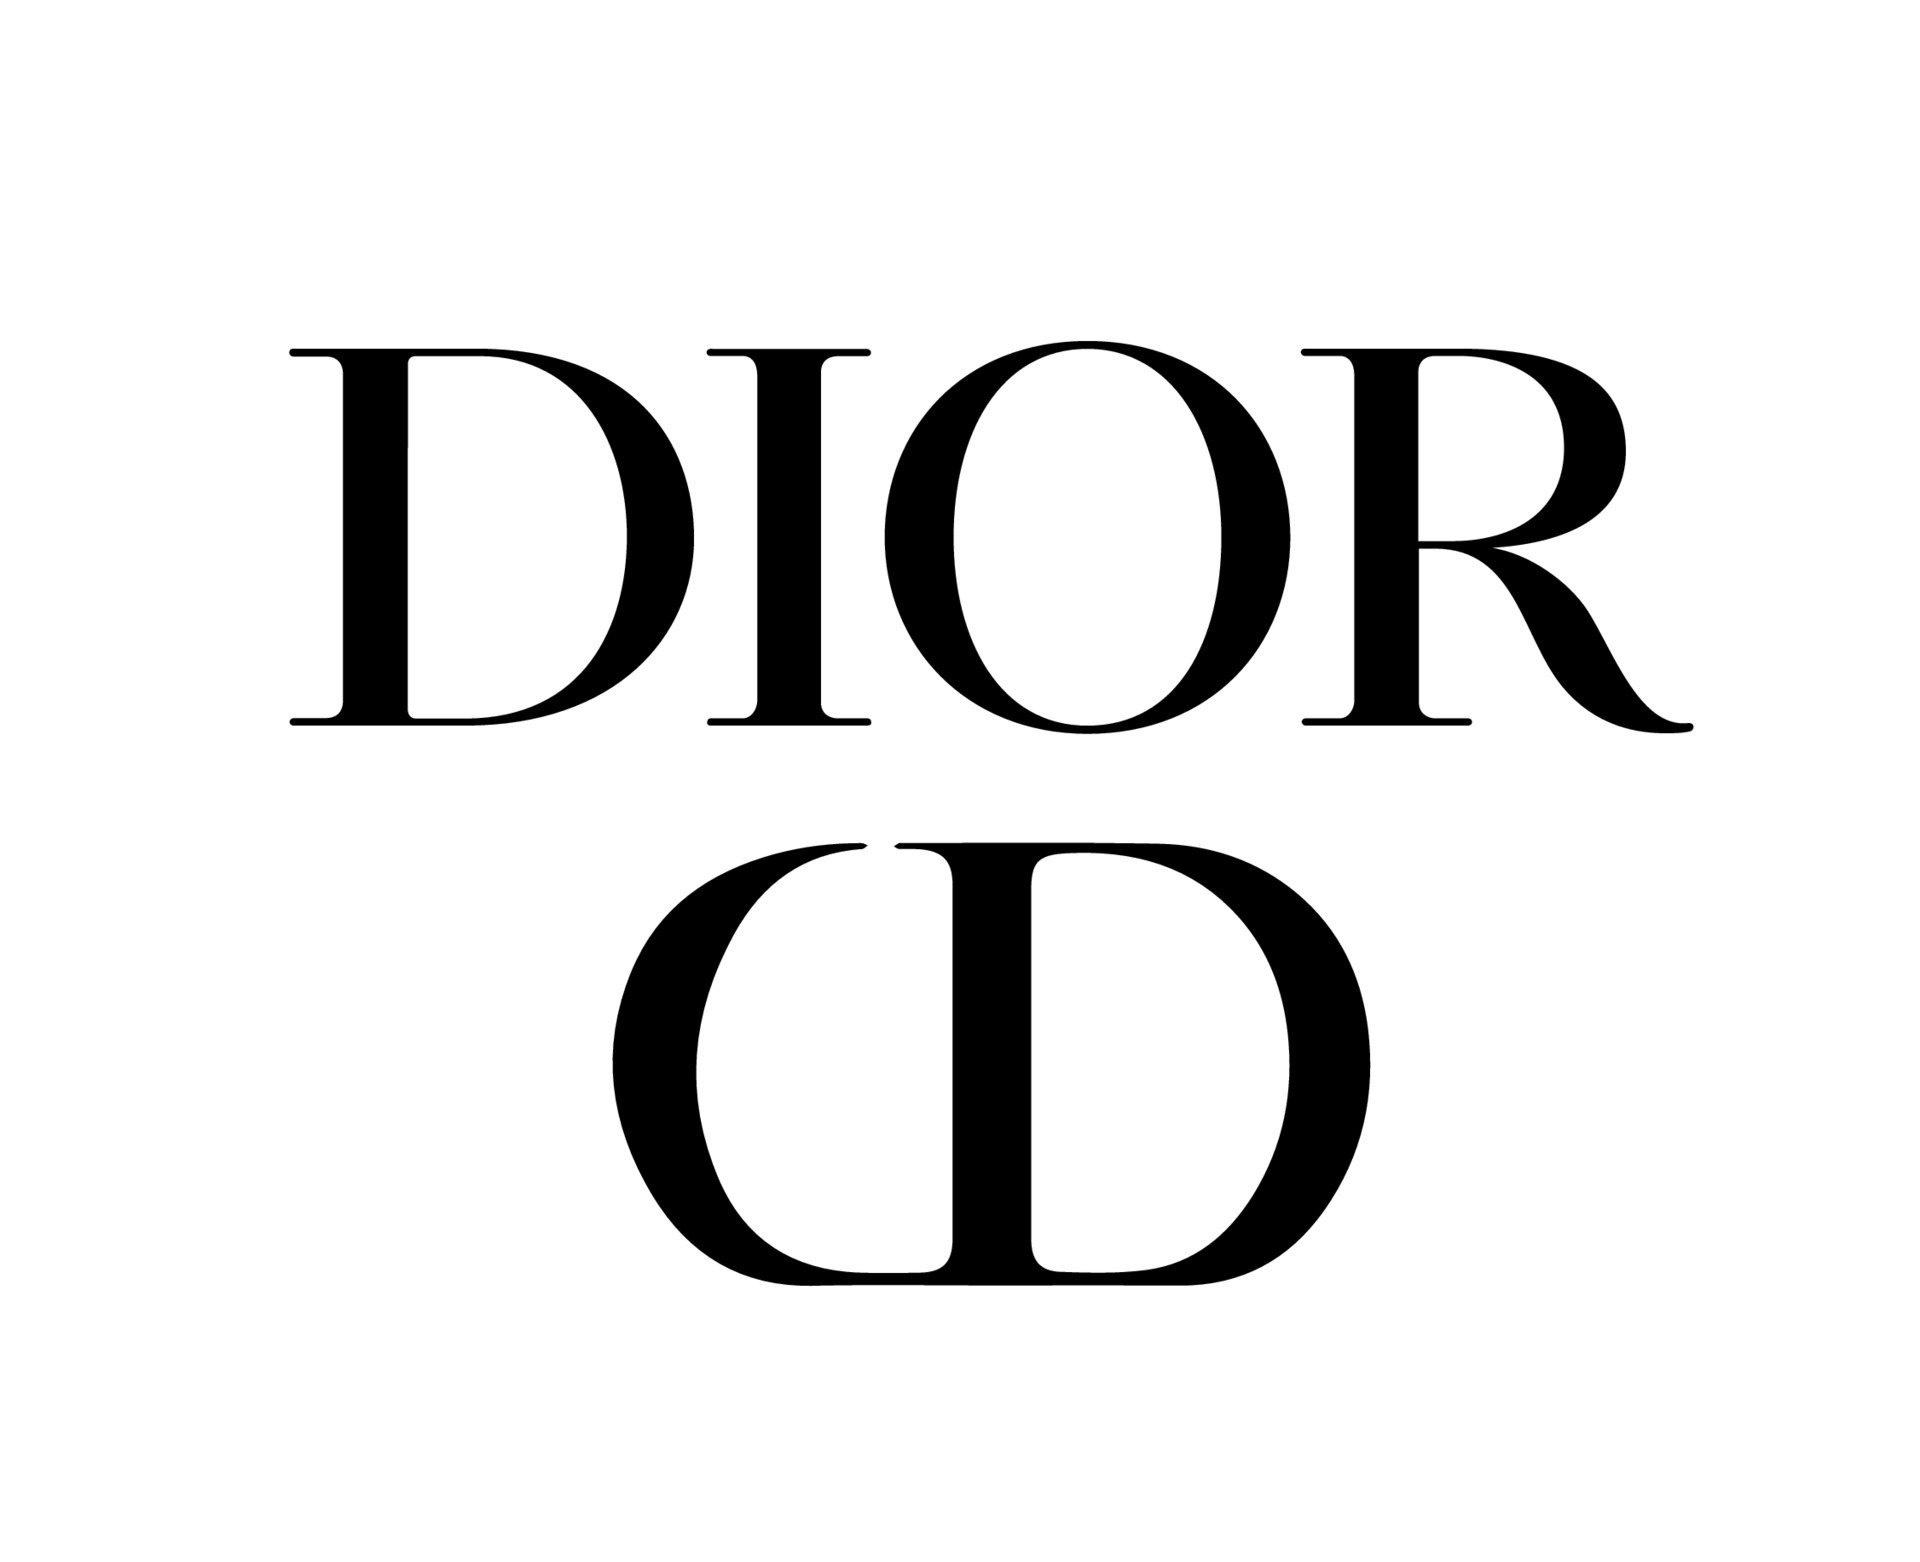 Christian Dior  histoire et succès dune marque icône de la mode